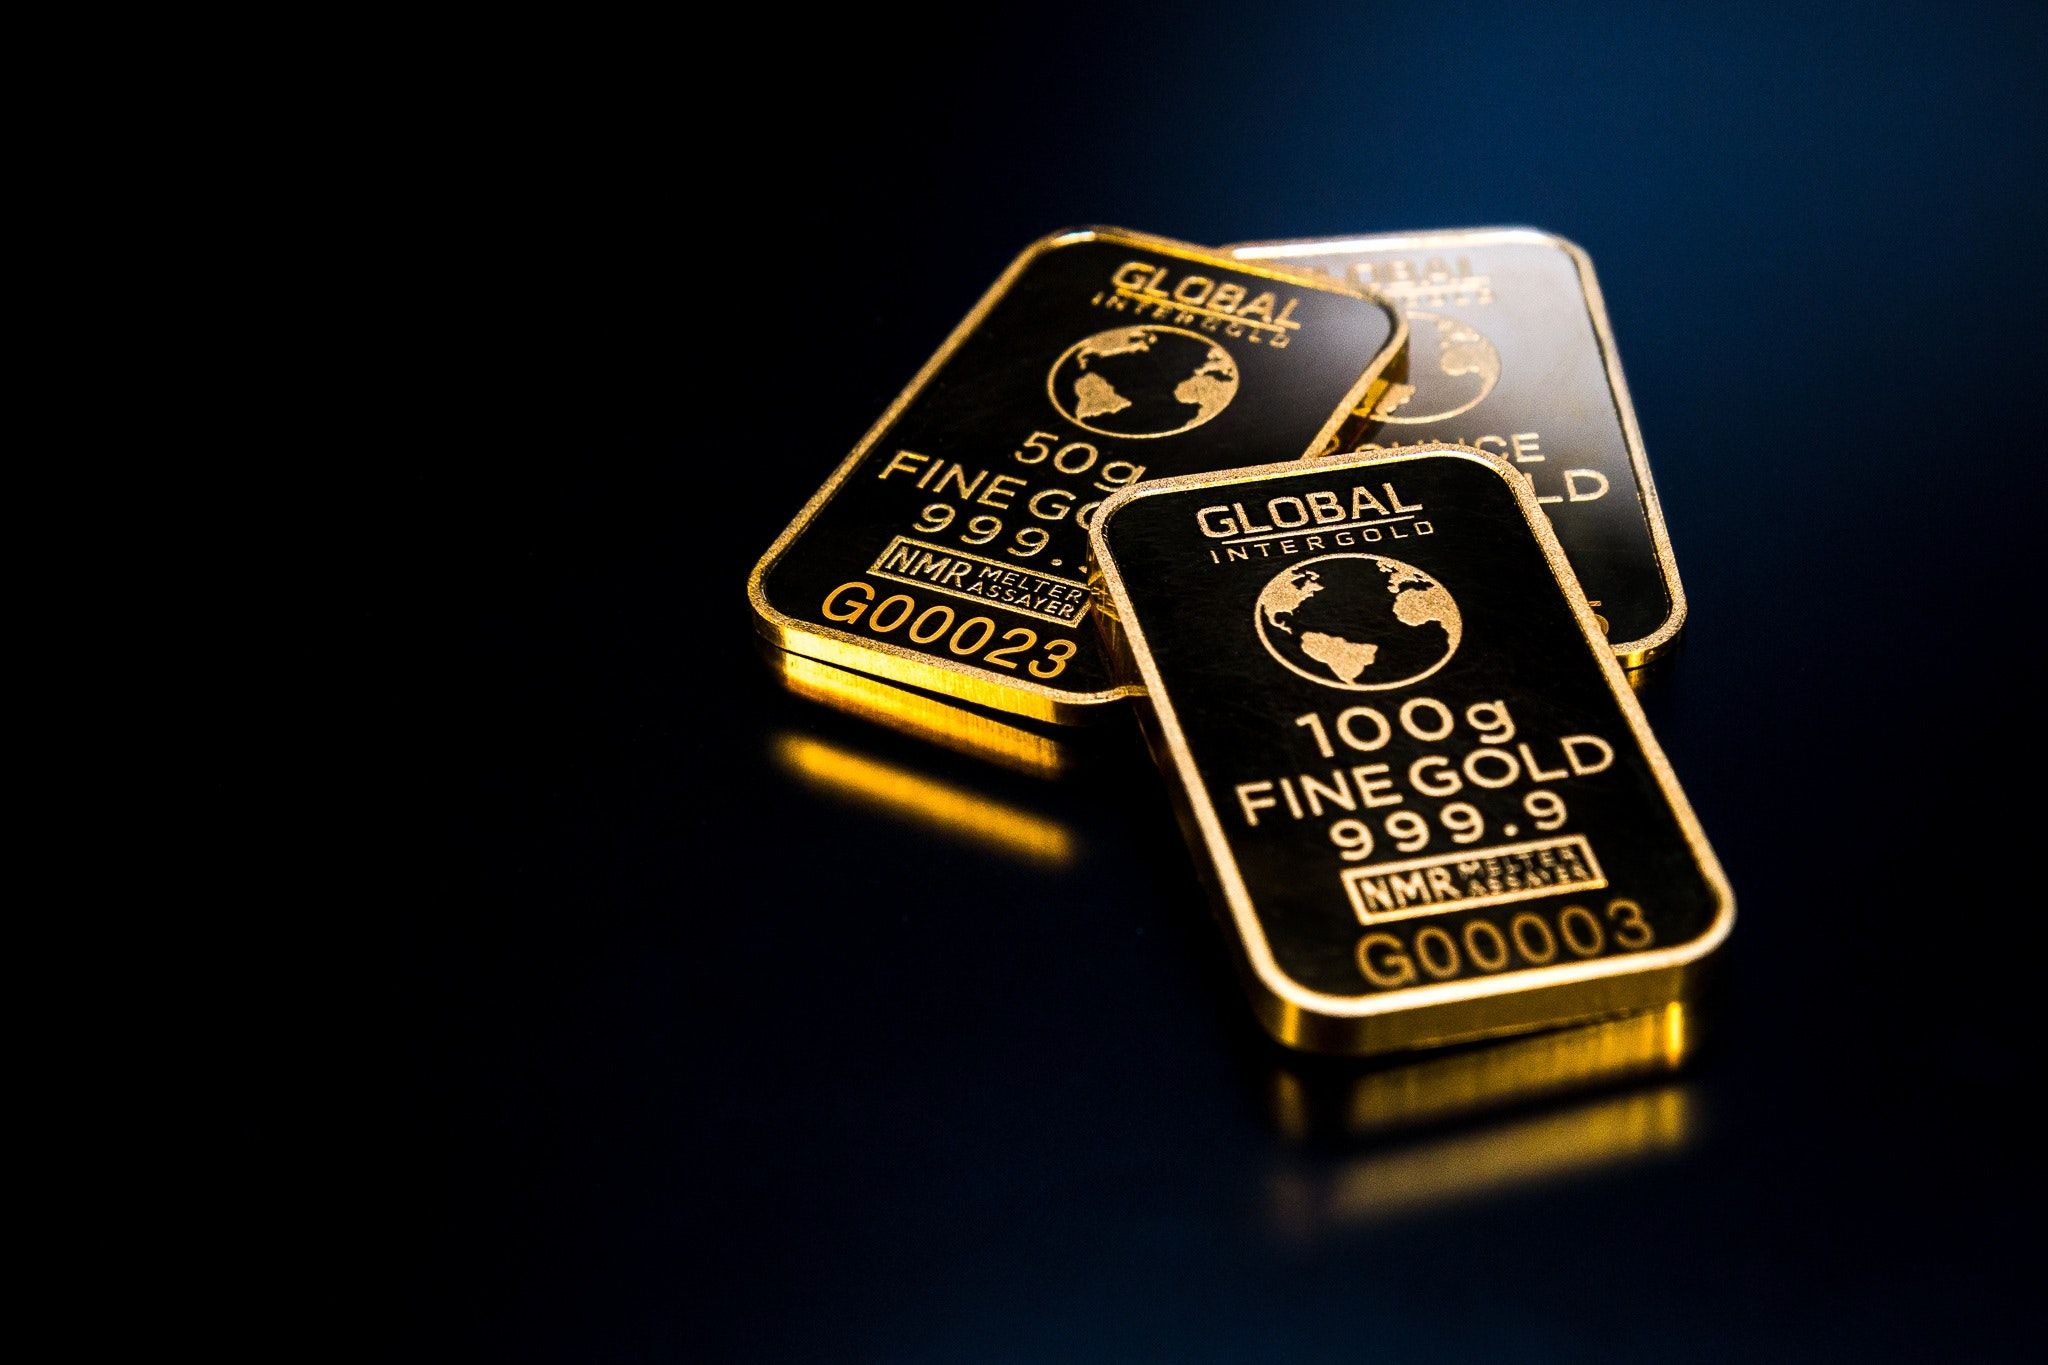 Emas : Apakah Emas Akan Bersinar Kembali Dalam Waktu Dekat?